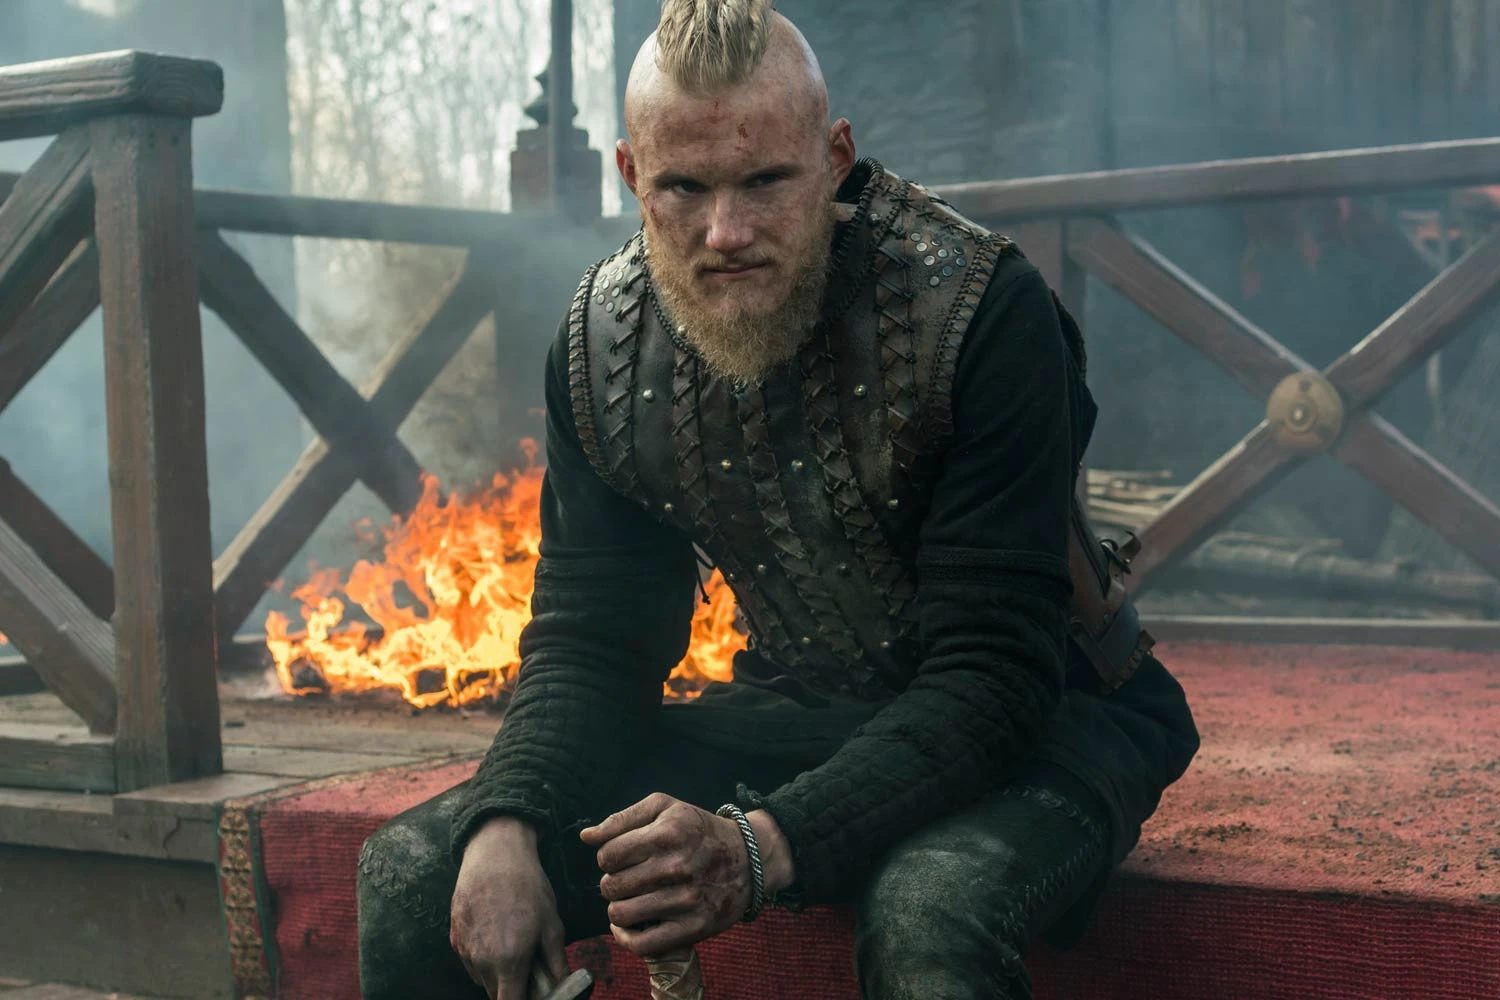 Vikings: Criador fala sobre verdadeira paternidade de Bjorn e